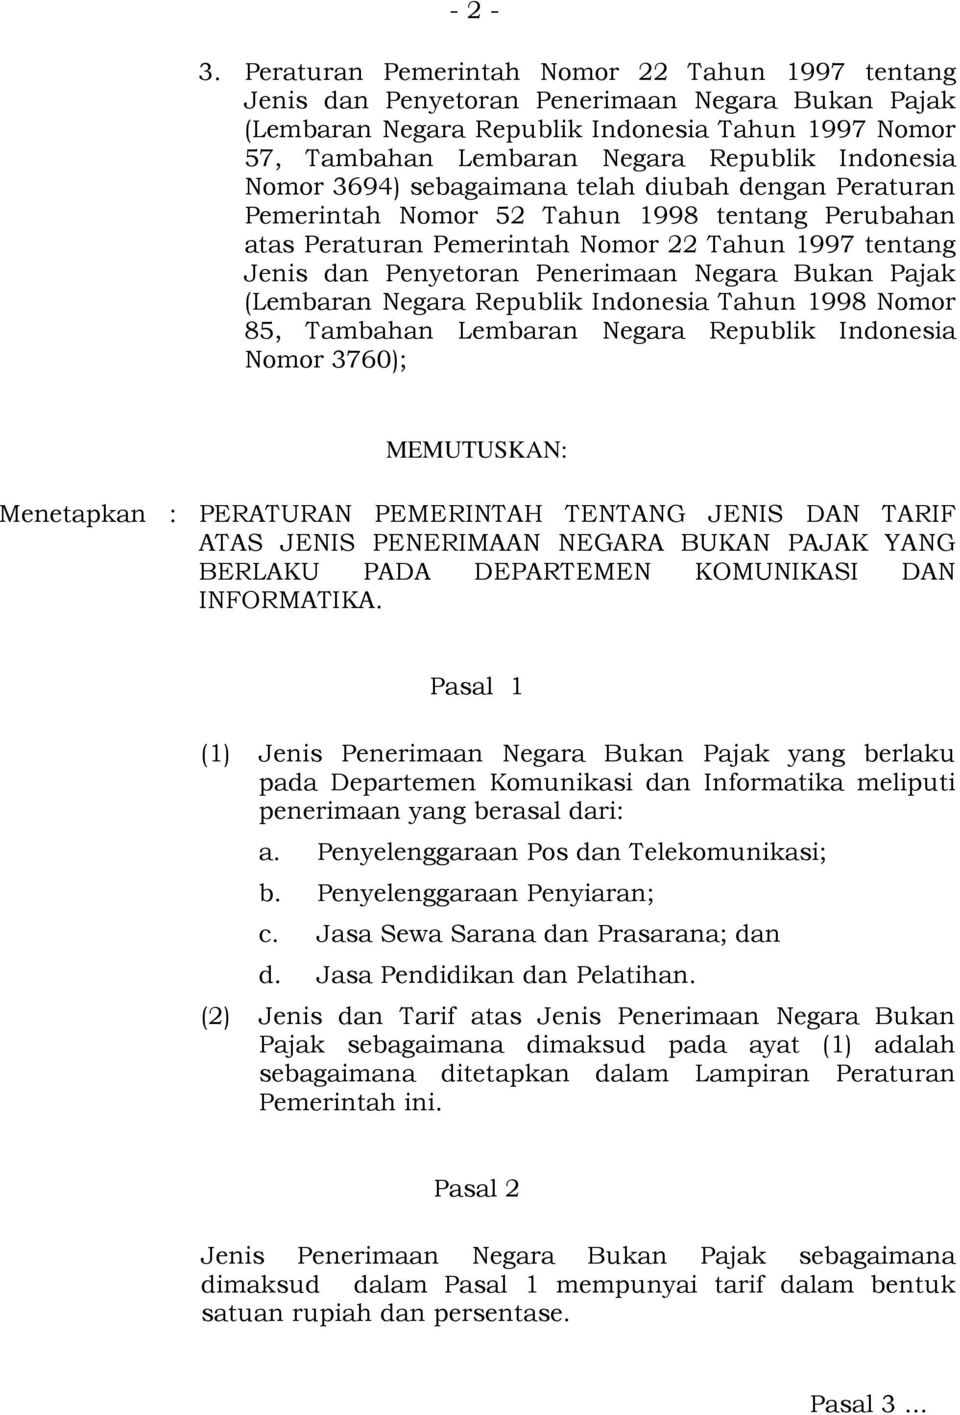 Indonesia Nomor 3694) sebagaimana telah diubah dengan Peraturan Pemerintah Nomor 52 Tahun 1998 tentang Perubahan atas Peraturan Pemerintah Nomor 22 Tahun 1997 tentang Jenis dan Penyetoran Penerimaan